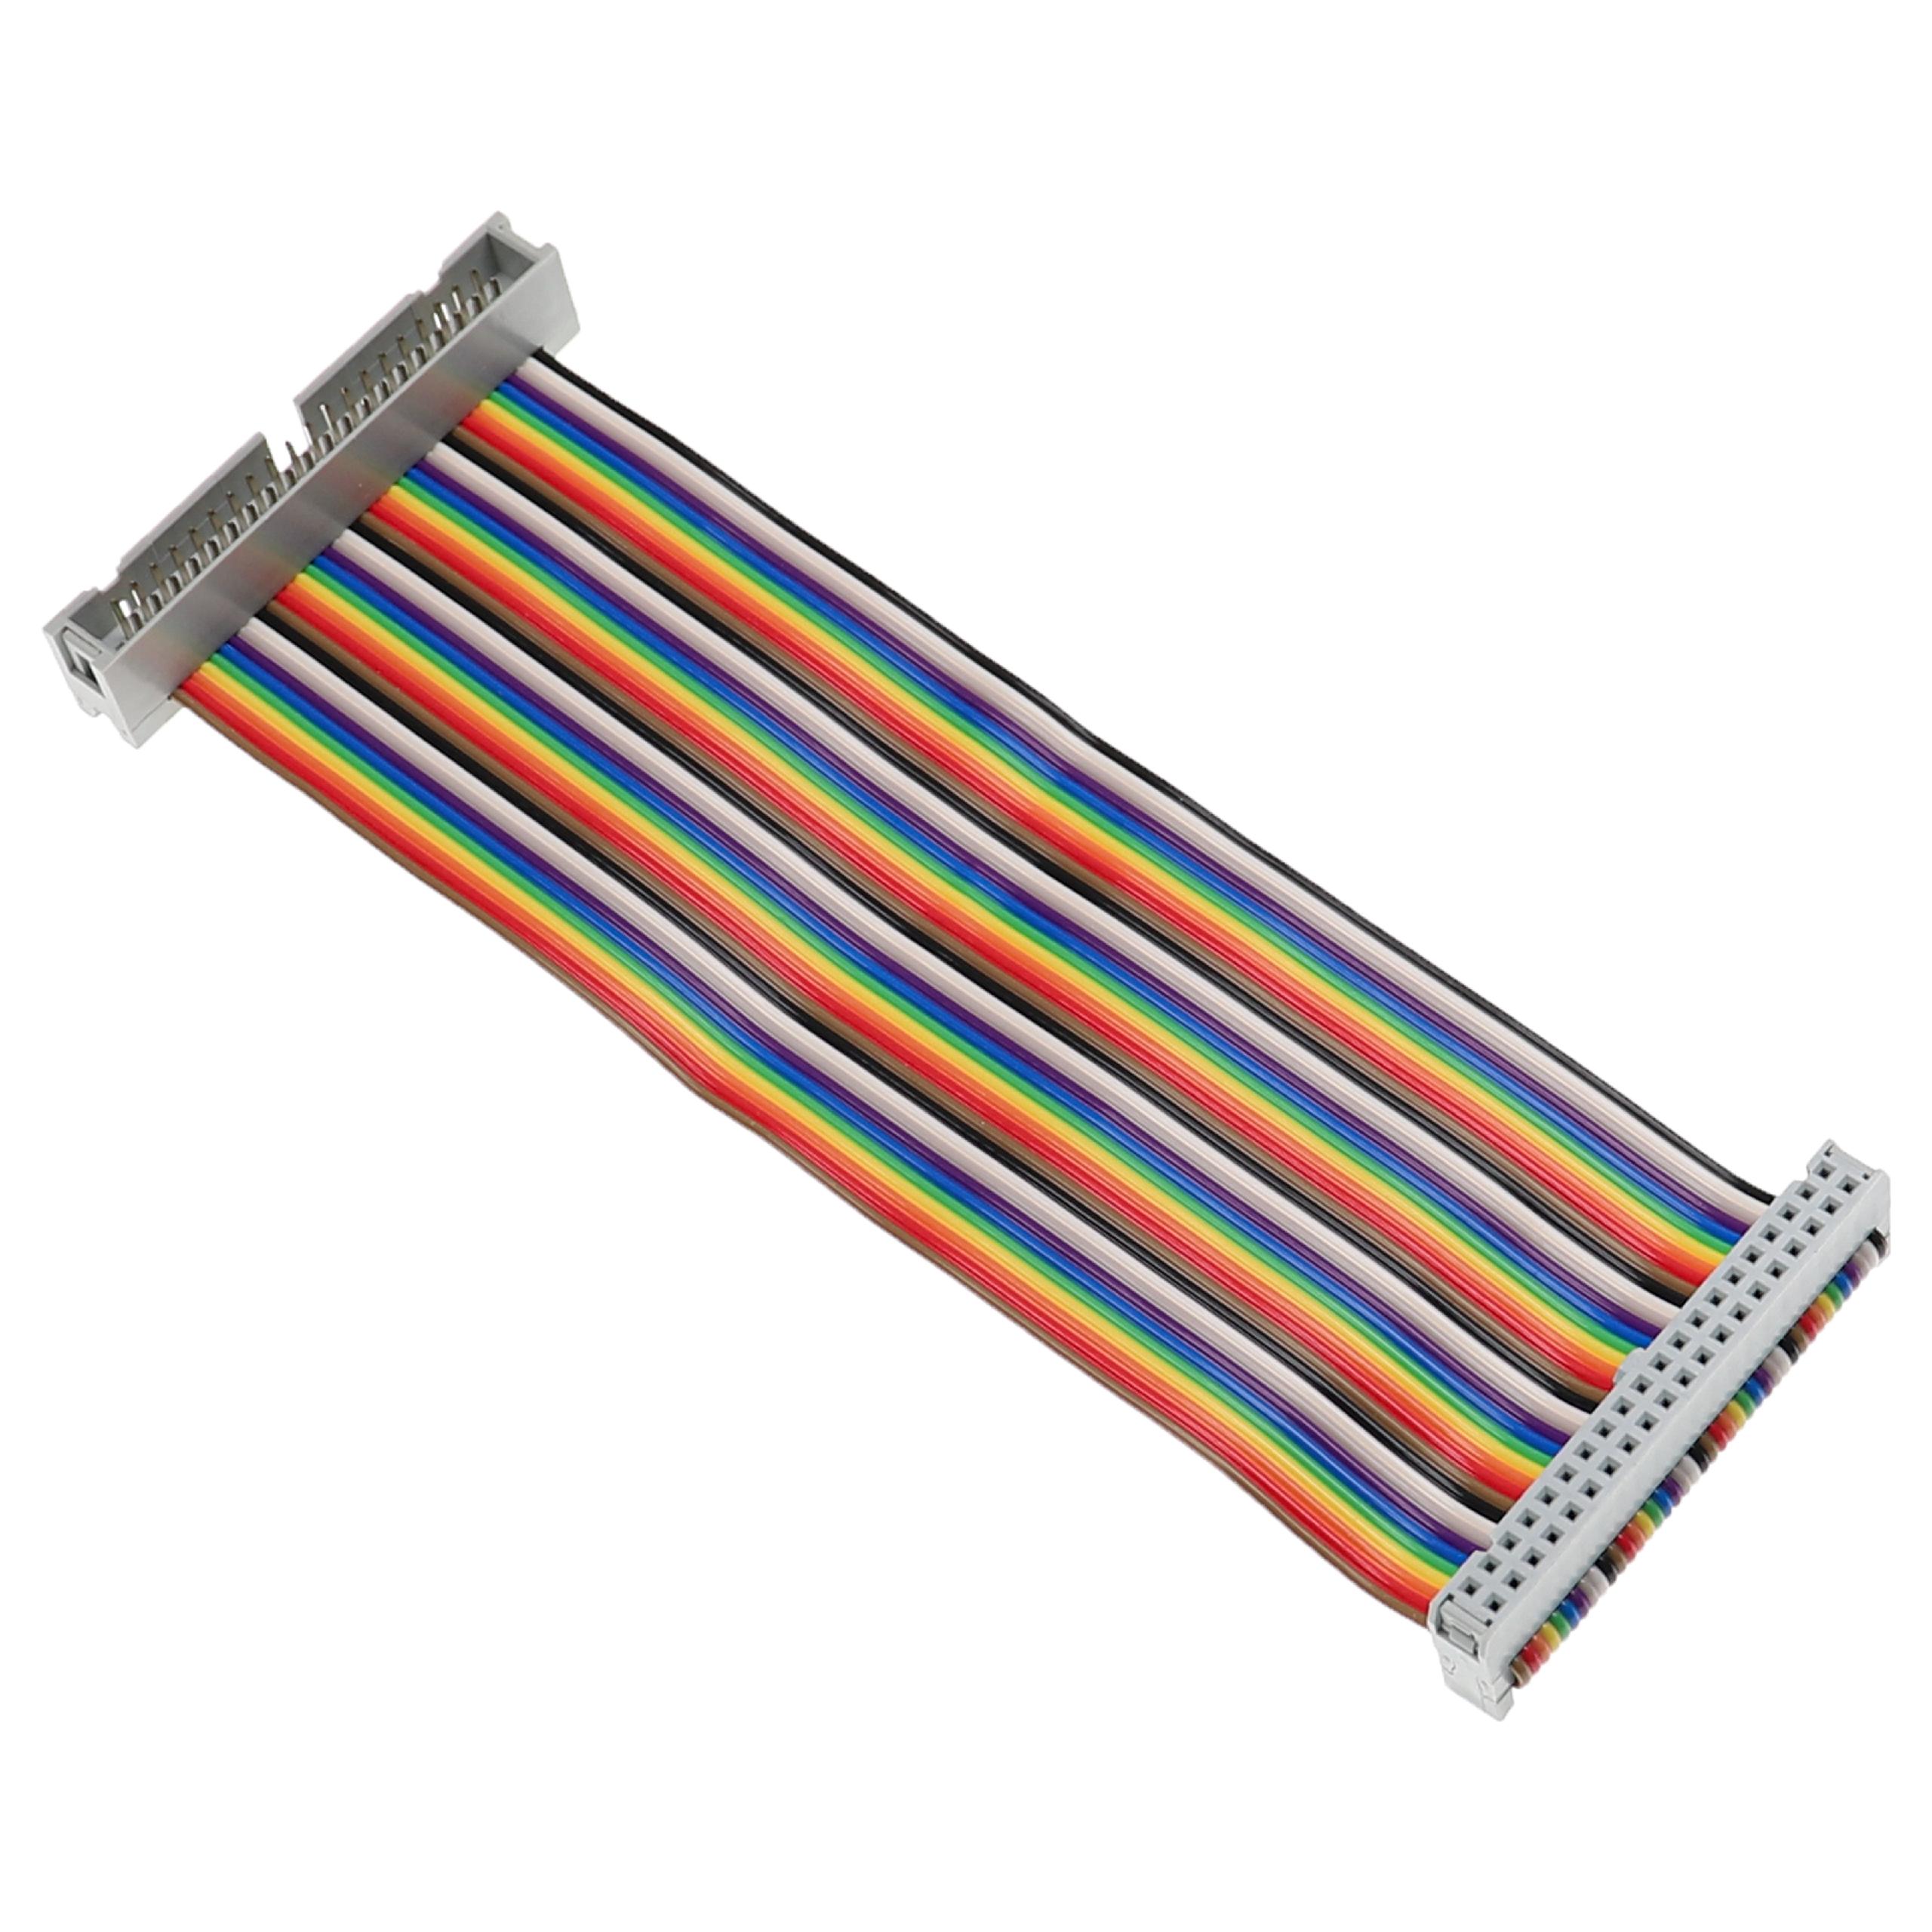 GPIO Cable 40 Pin suitable for Raspberry Pi Mini Computer - GPIO Extension Cable, Multi-Coloured, 15 cm